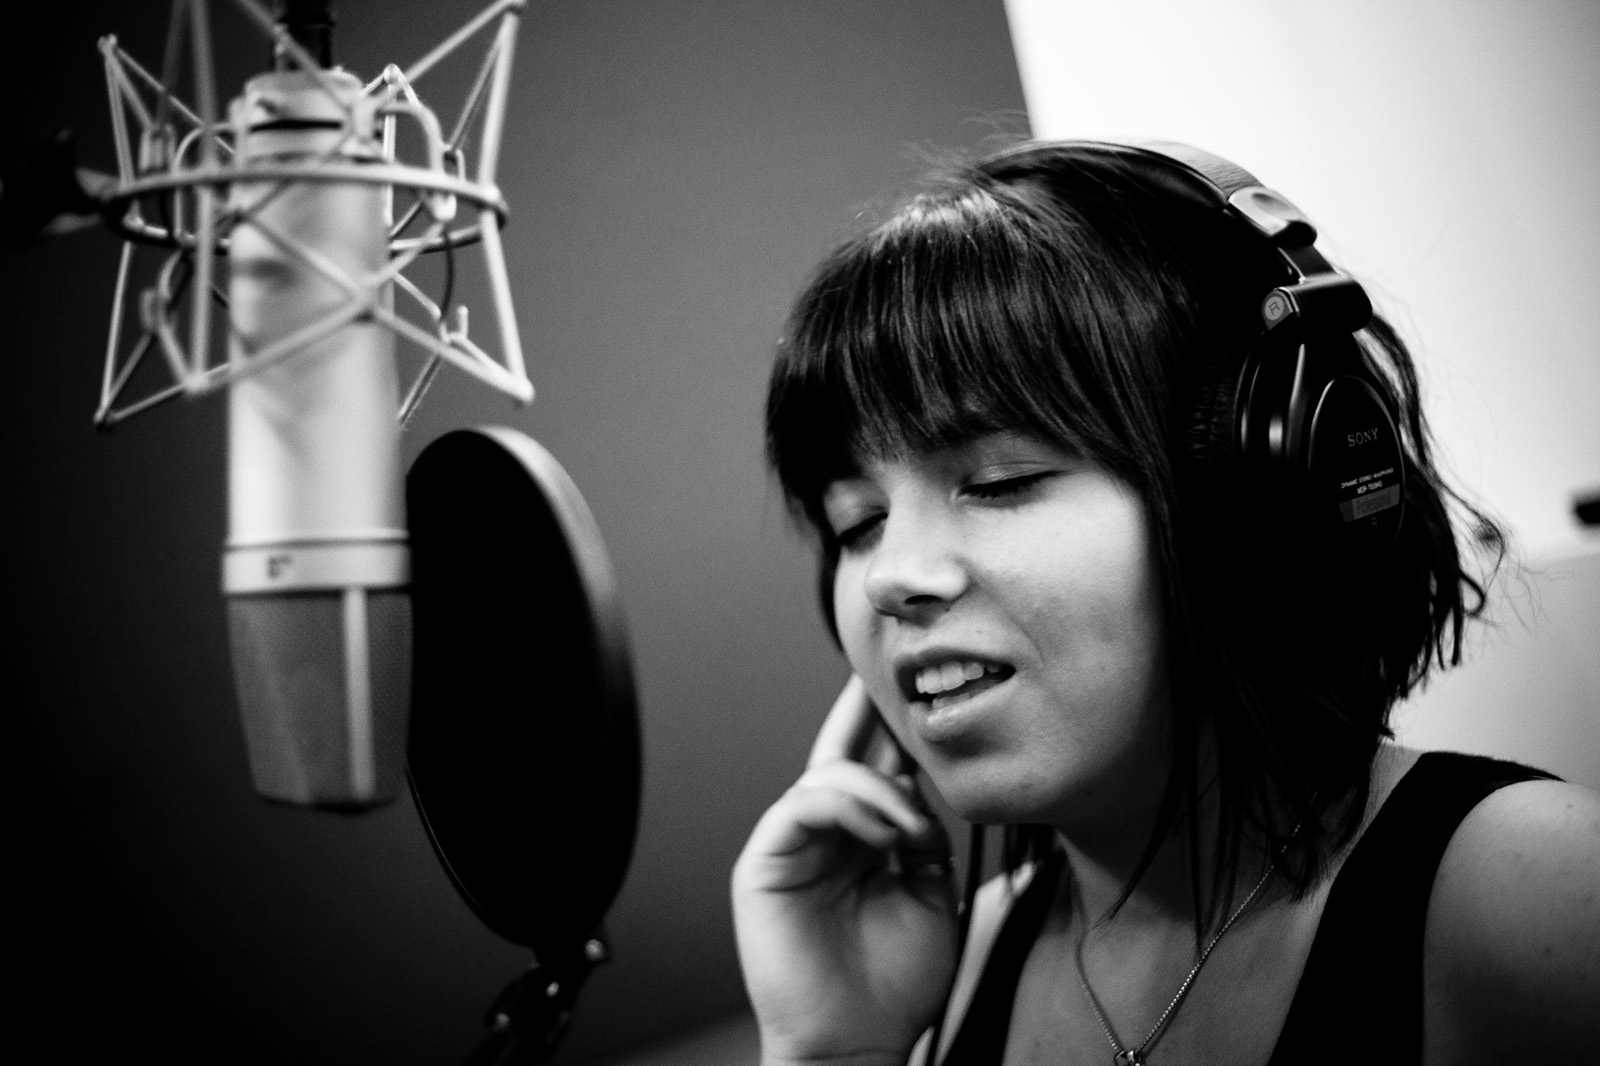 Сайт вокала. А студия певица. Девушка поет. Поет в студии. Фотосессия с микрофоном в студии.